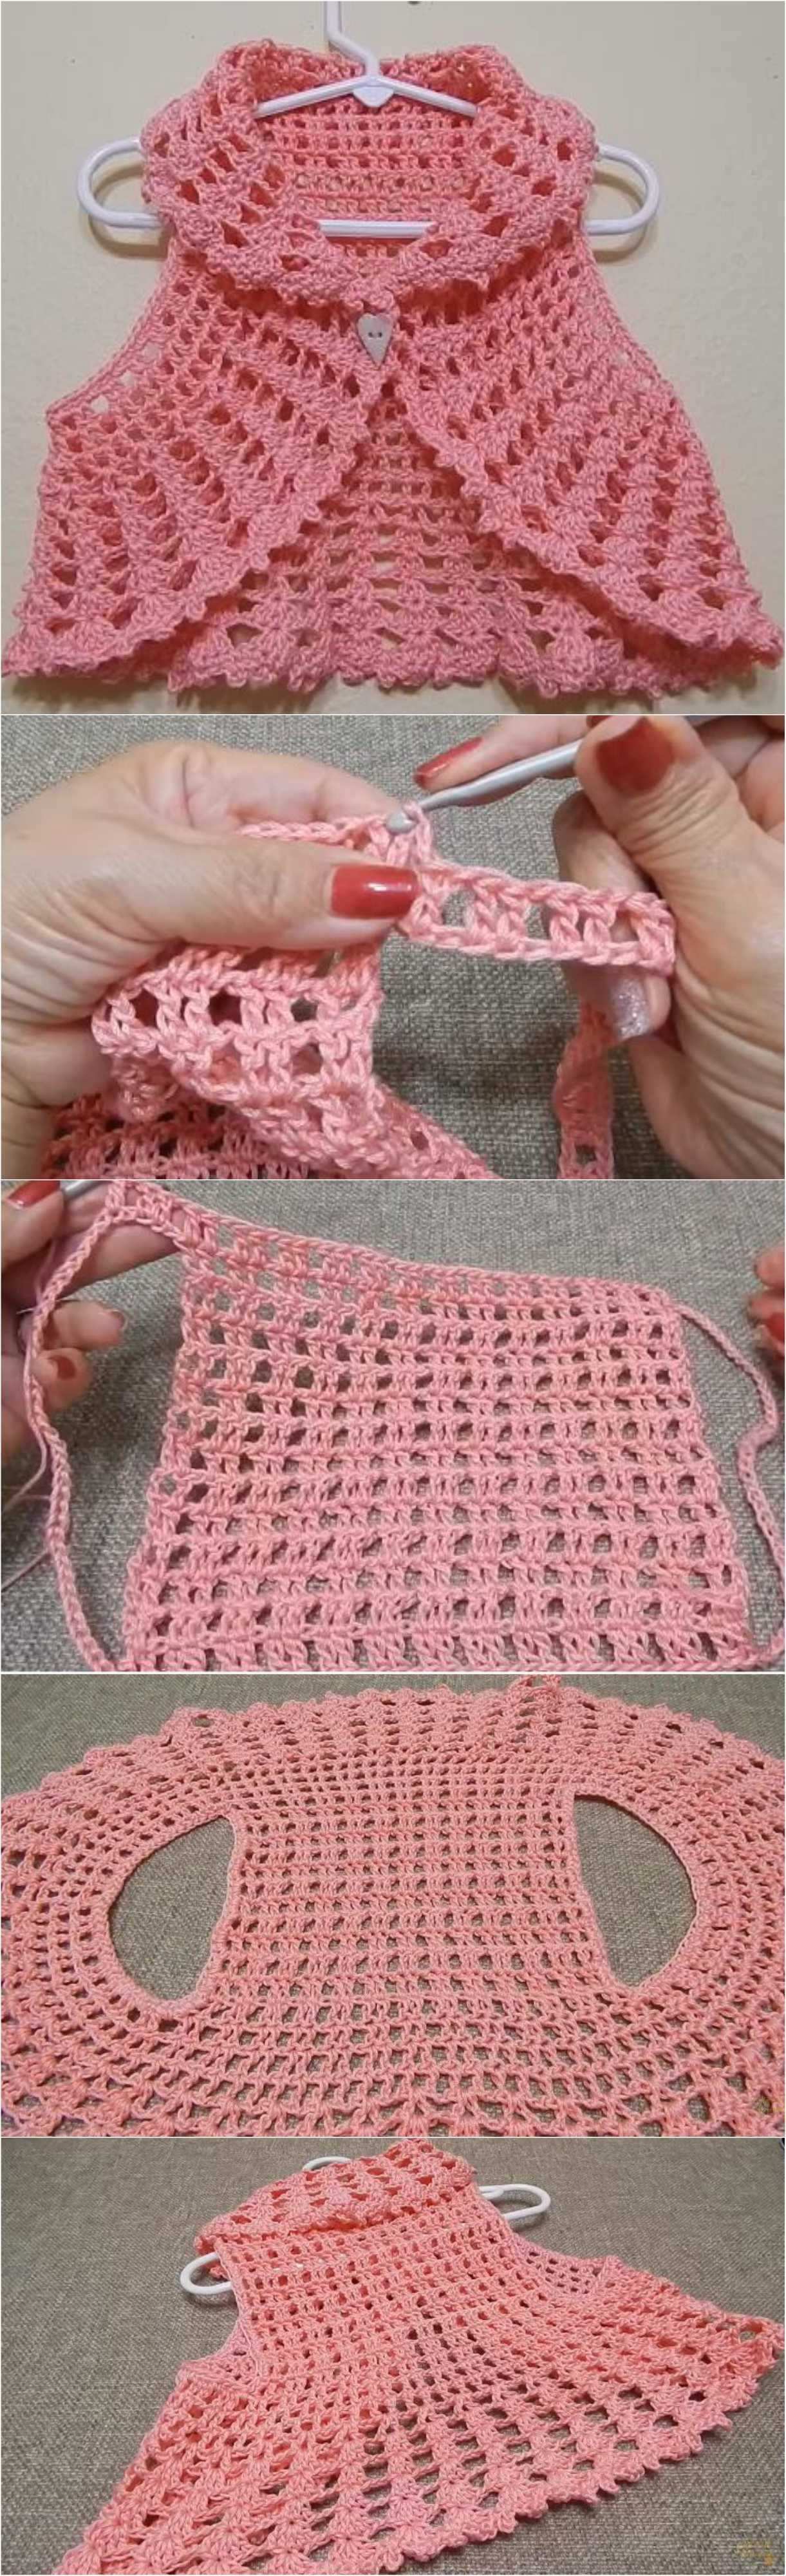 Crochet Bolero Vest Trico E Croche Bolero De Croche Vestidos De Croche